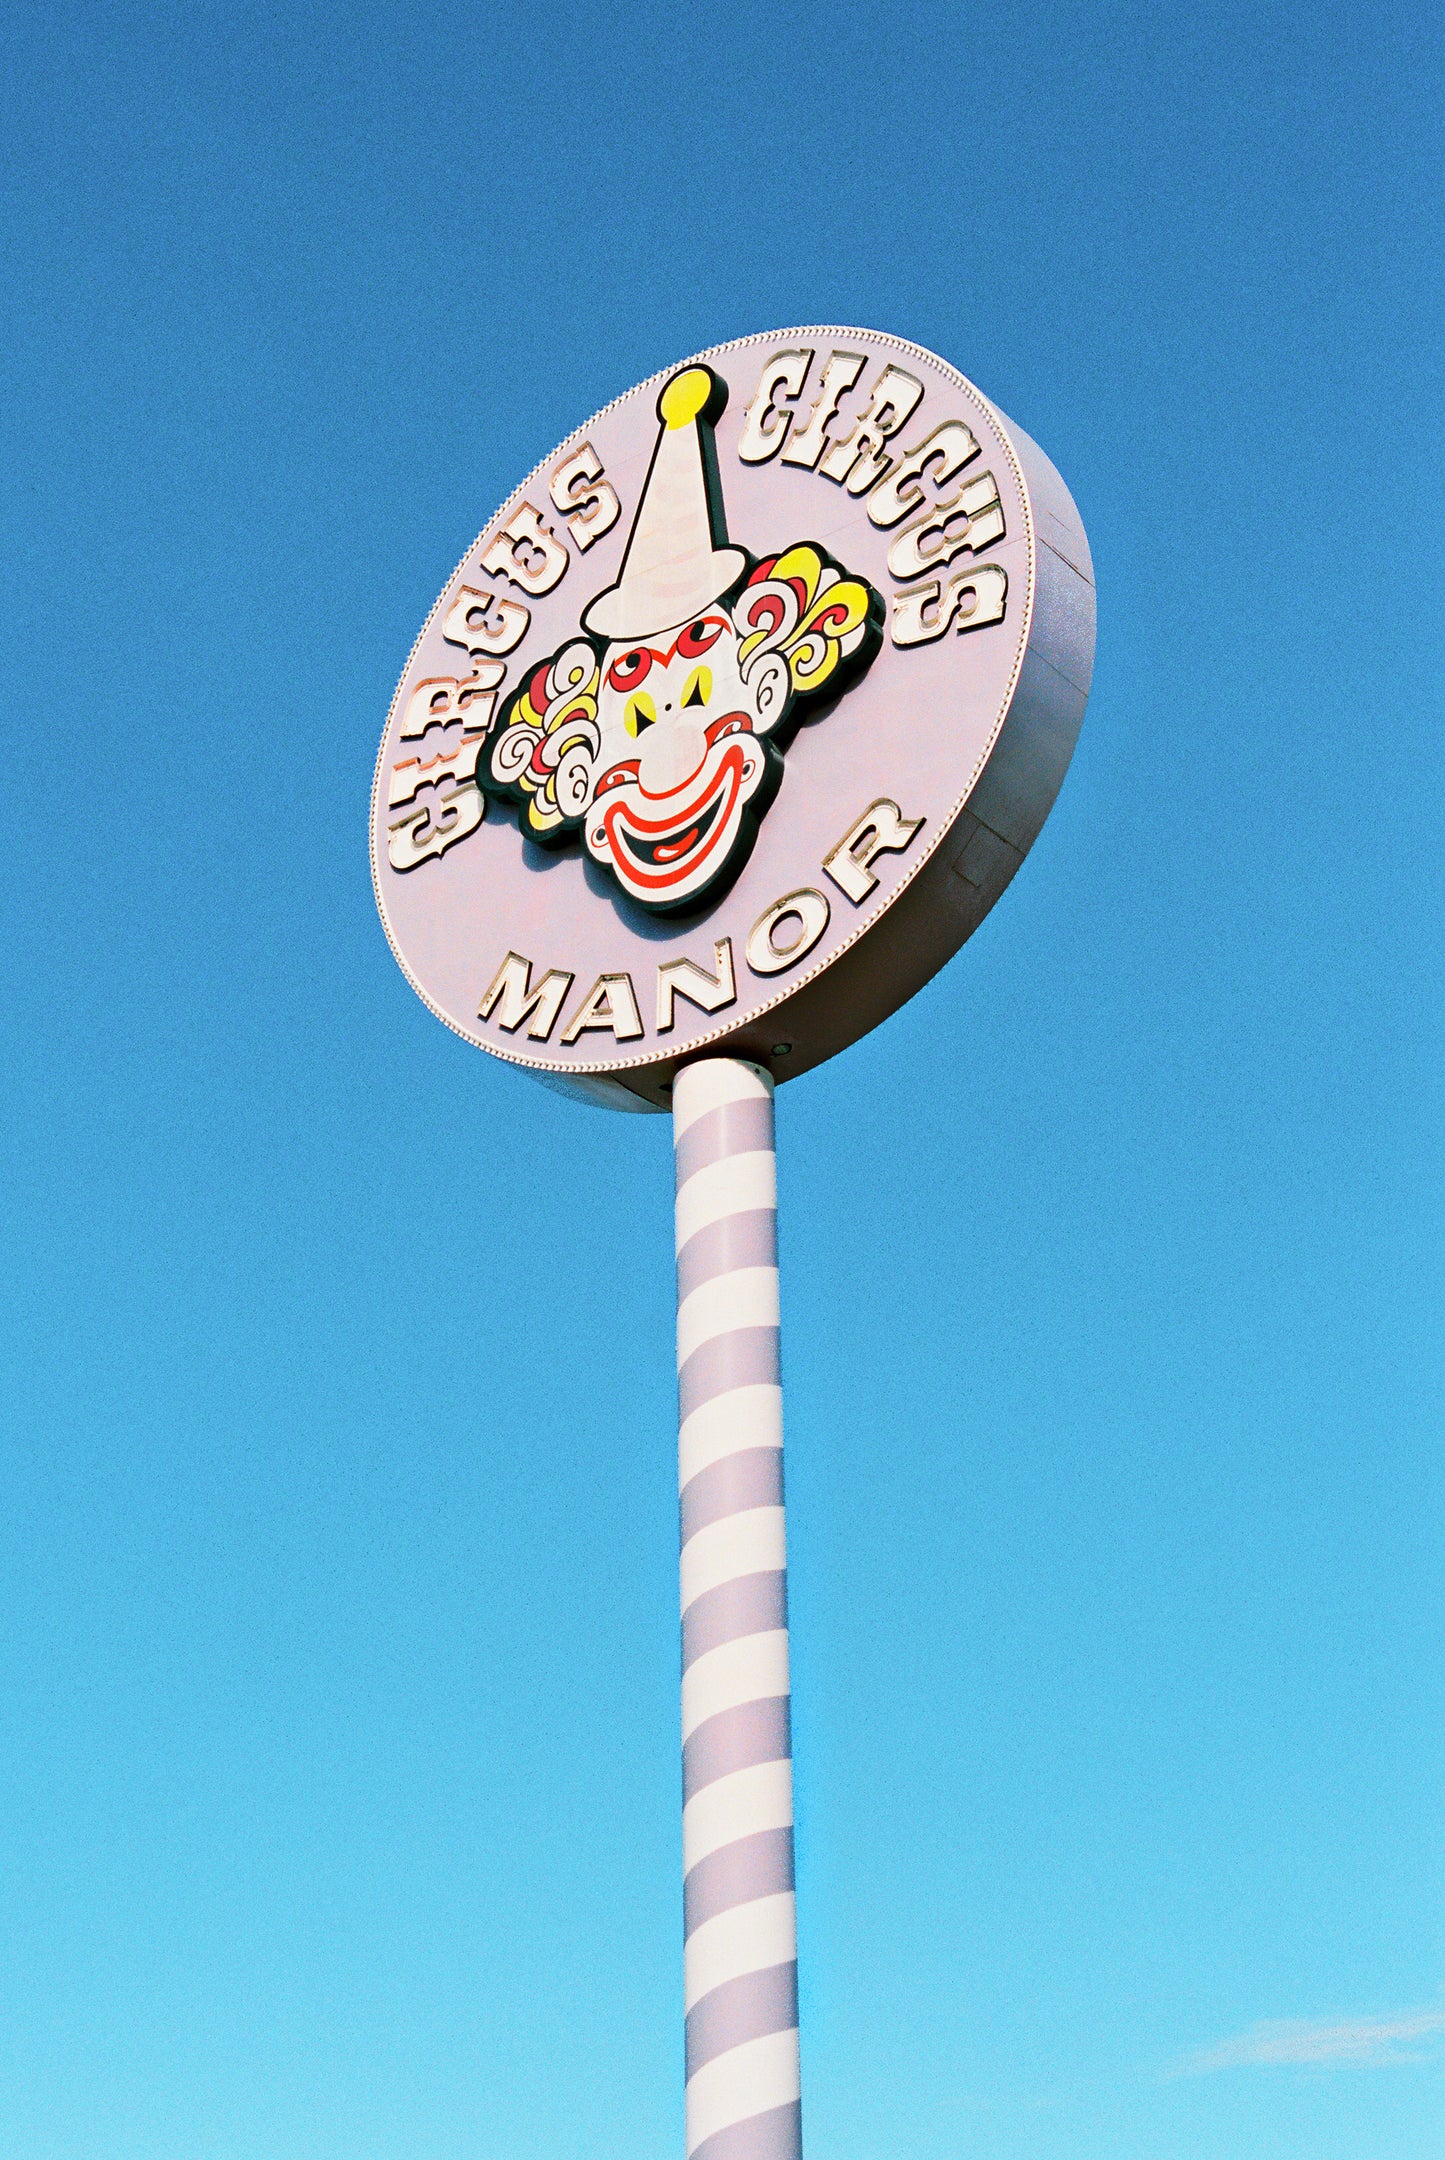 Circus Circus Pin